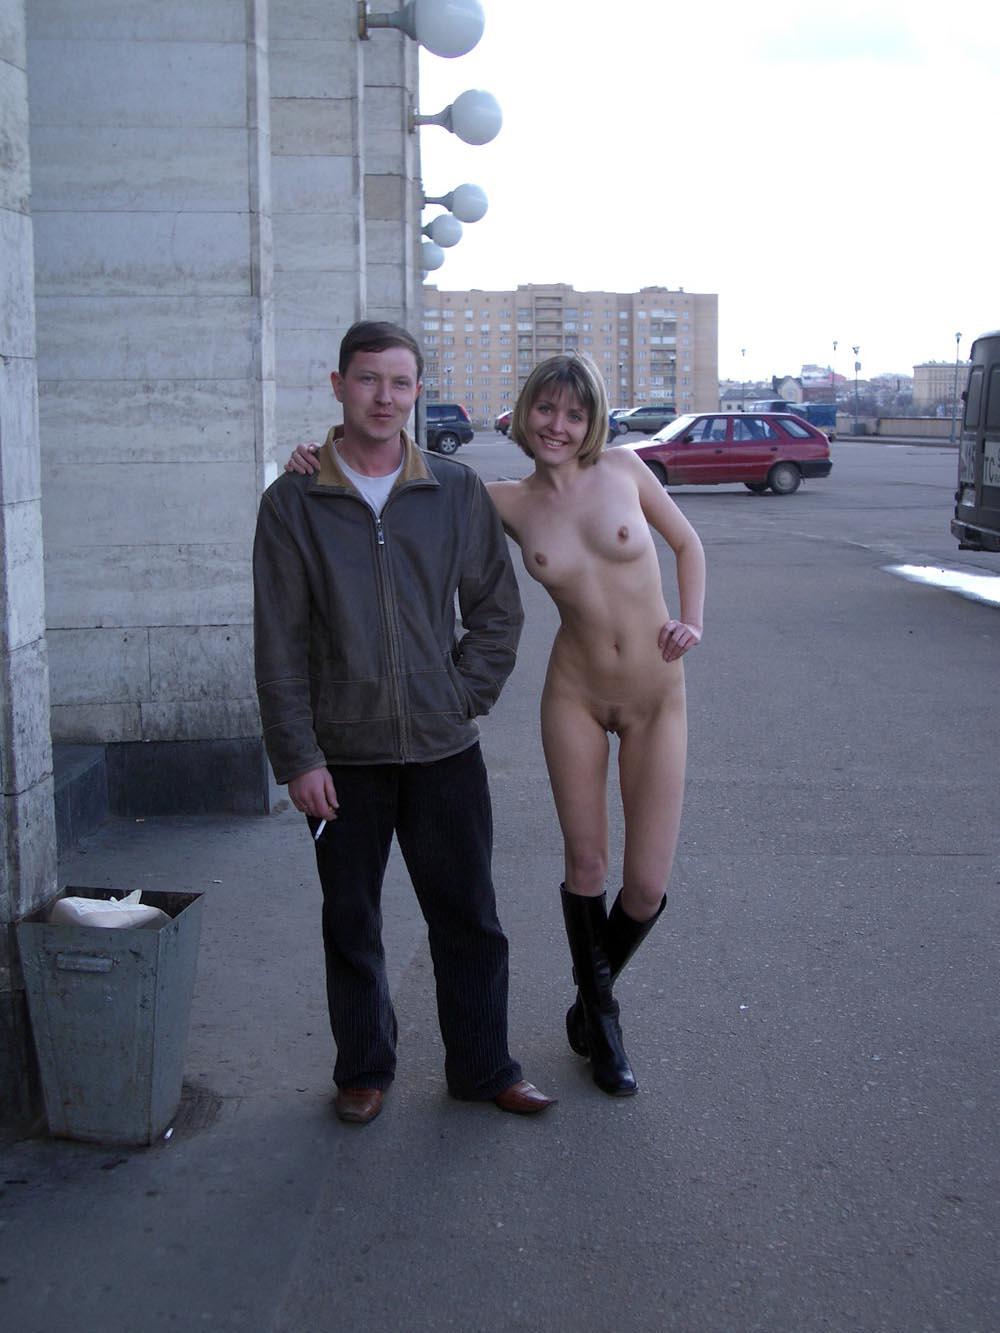 голые парни с одетыми девушками по улице фото 24